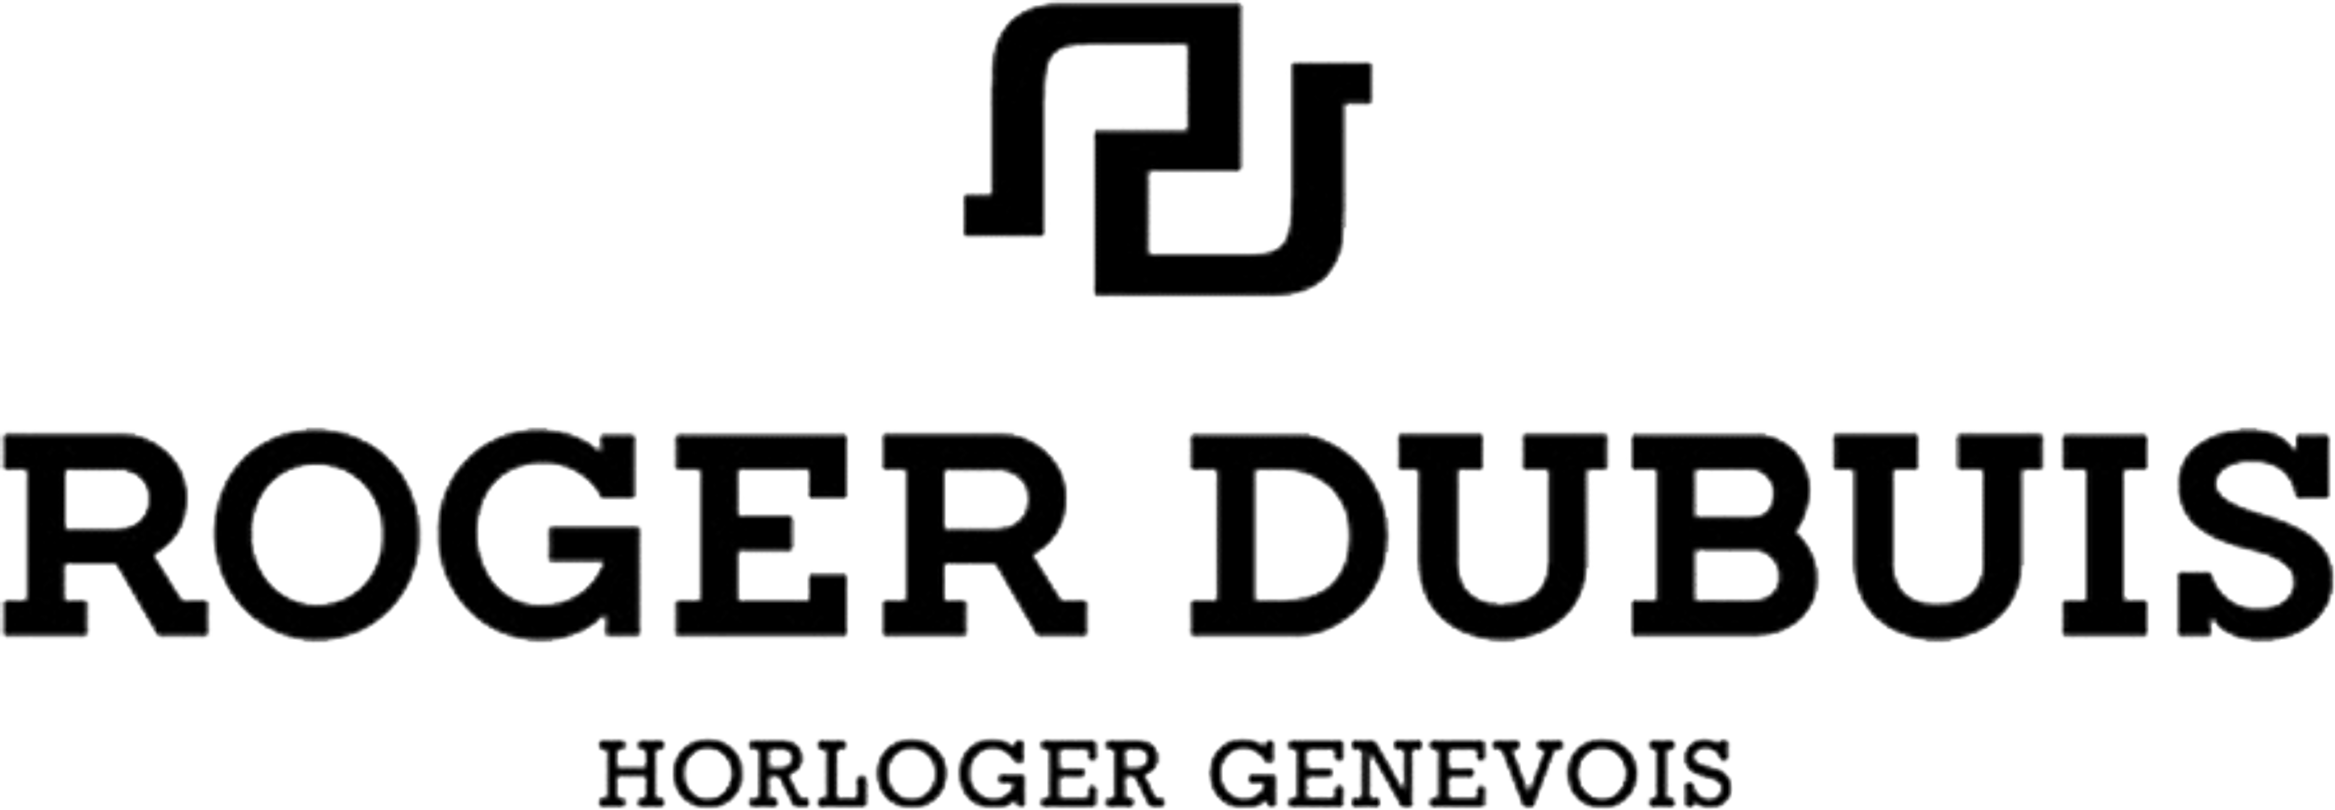 810-810-roger-dubuis-logo_bfa1e0c4fdbe51dcad3240d3a5ffc292.png